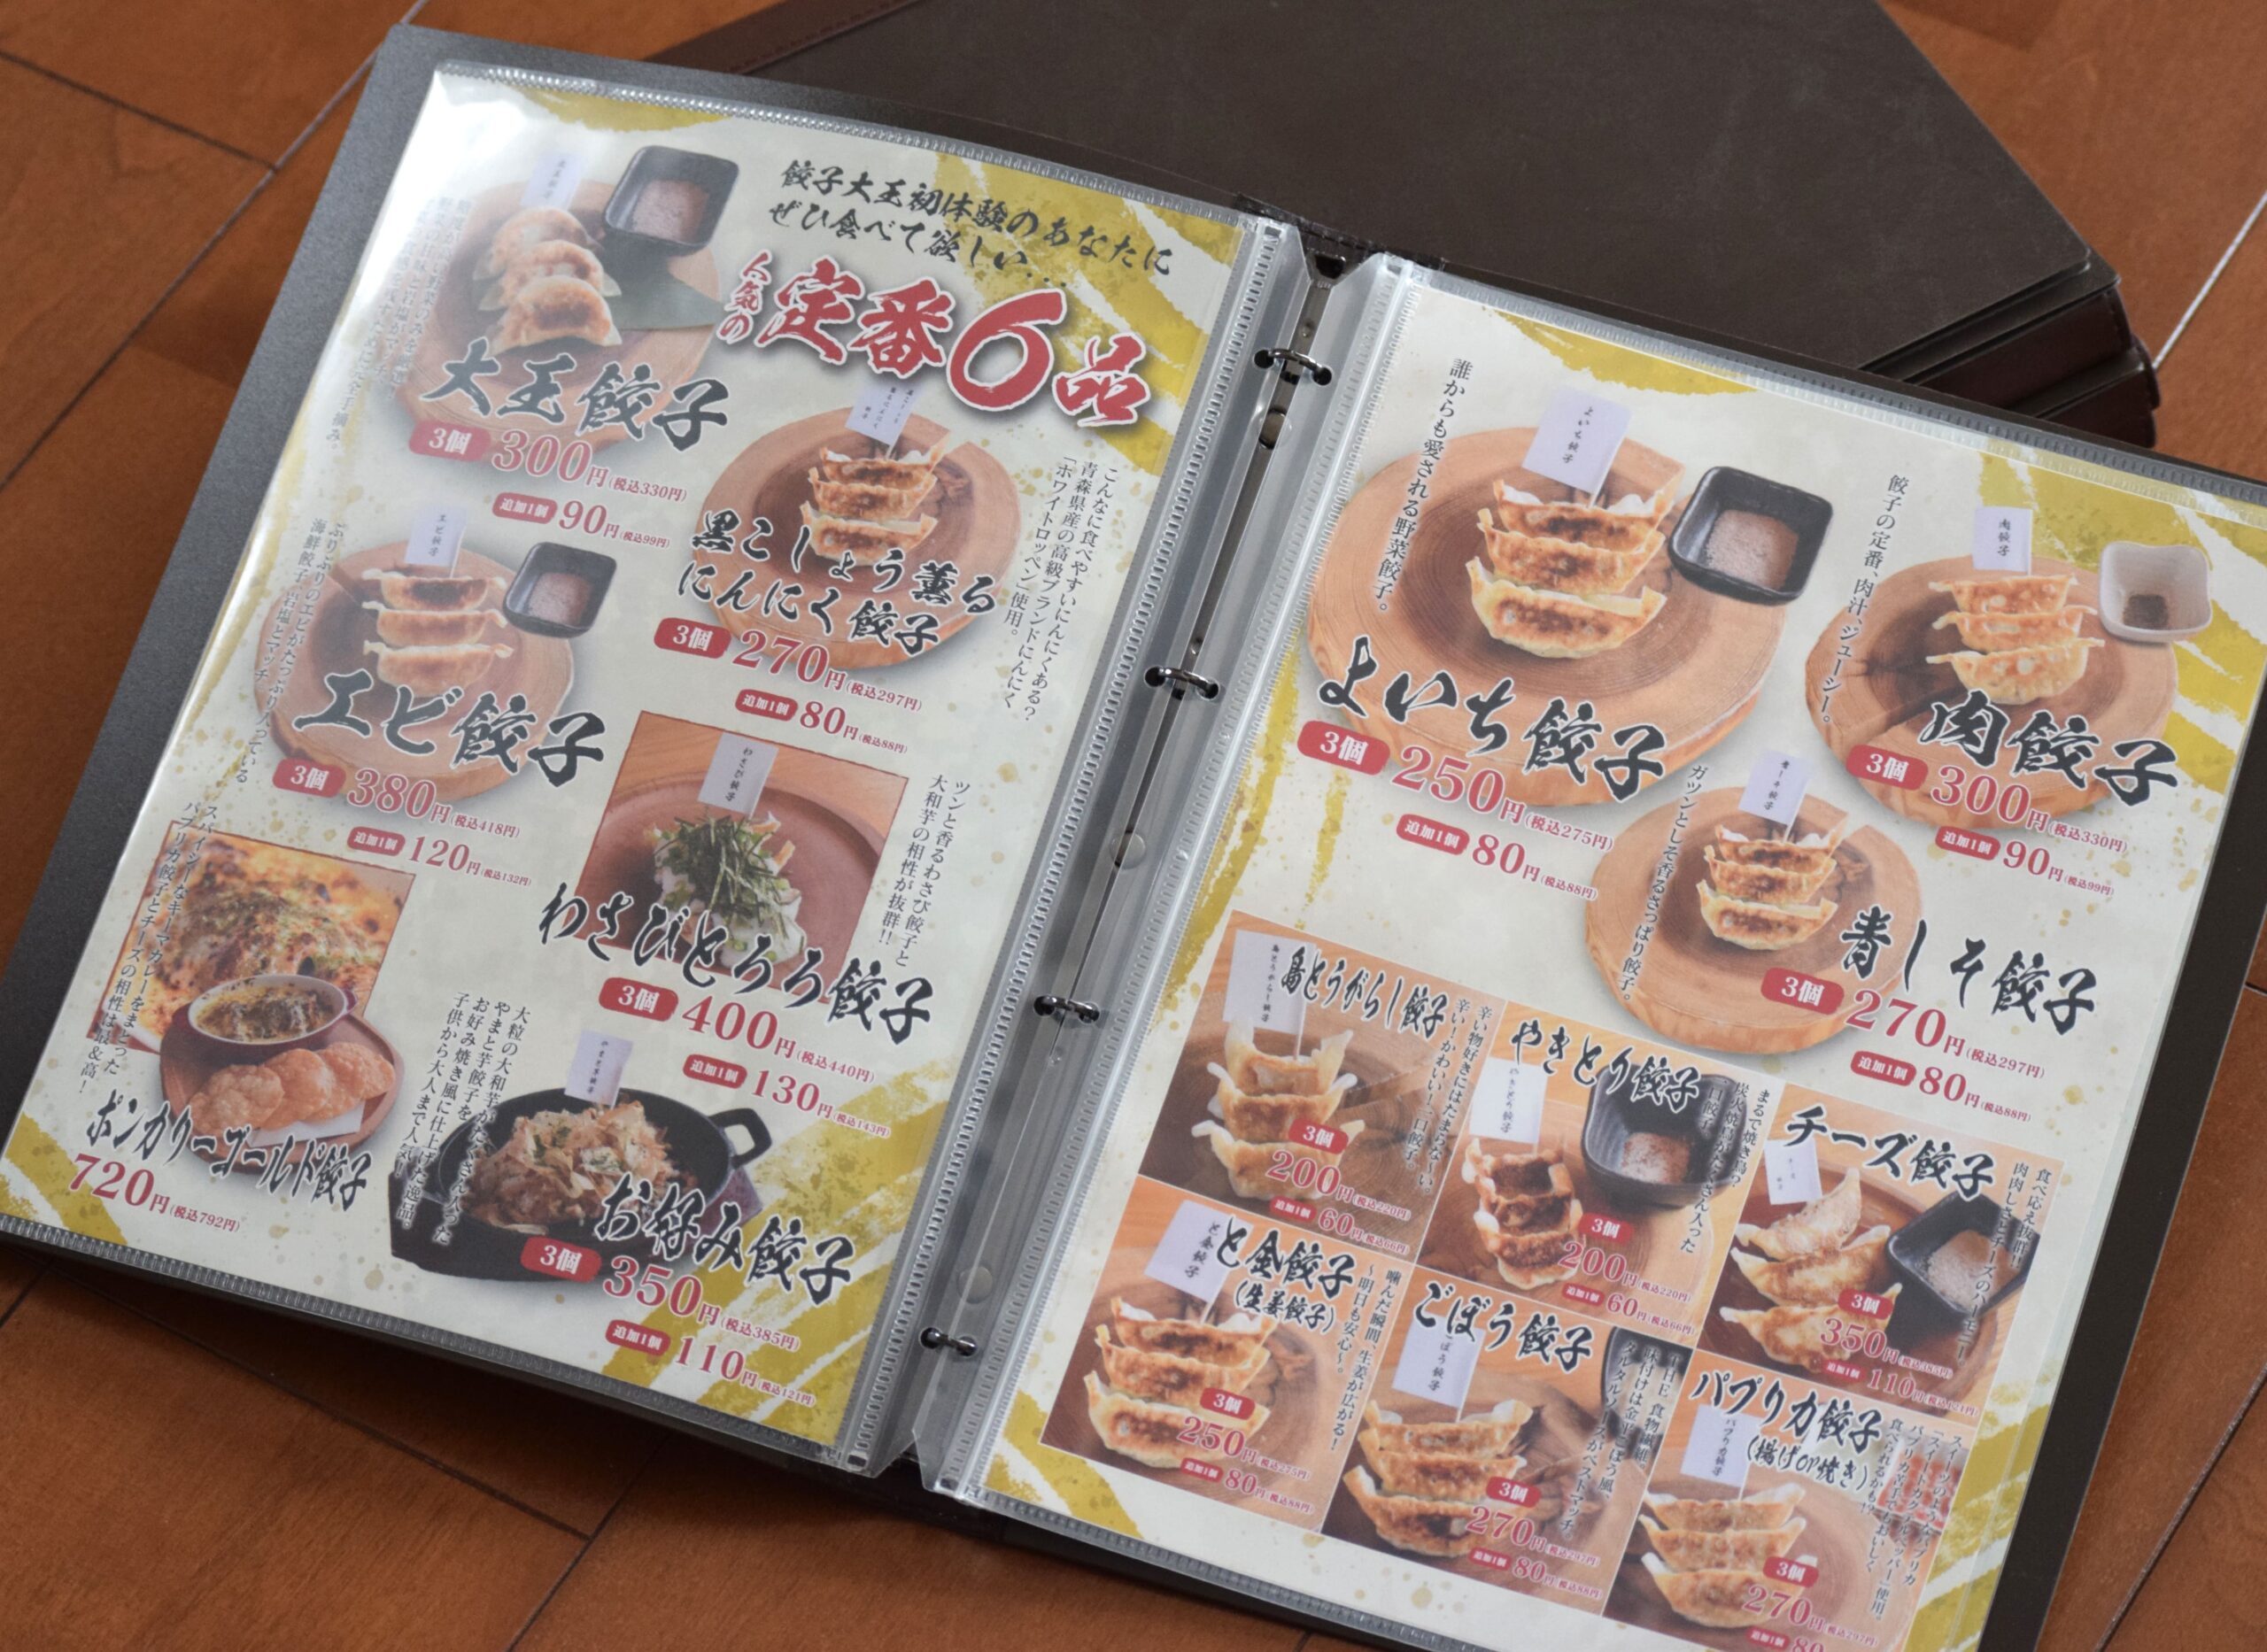 餃子メニュー3ページ、お食事メニュー1ページの合計5ページ